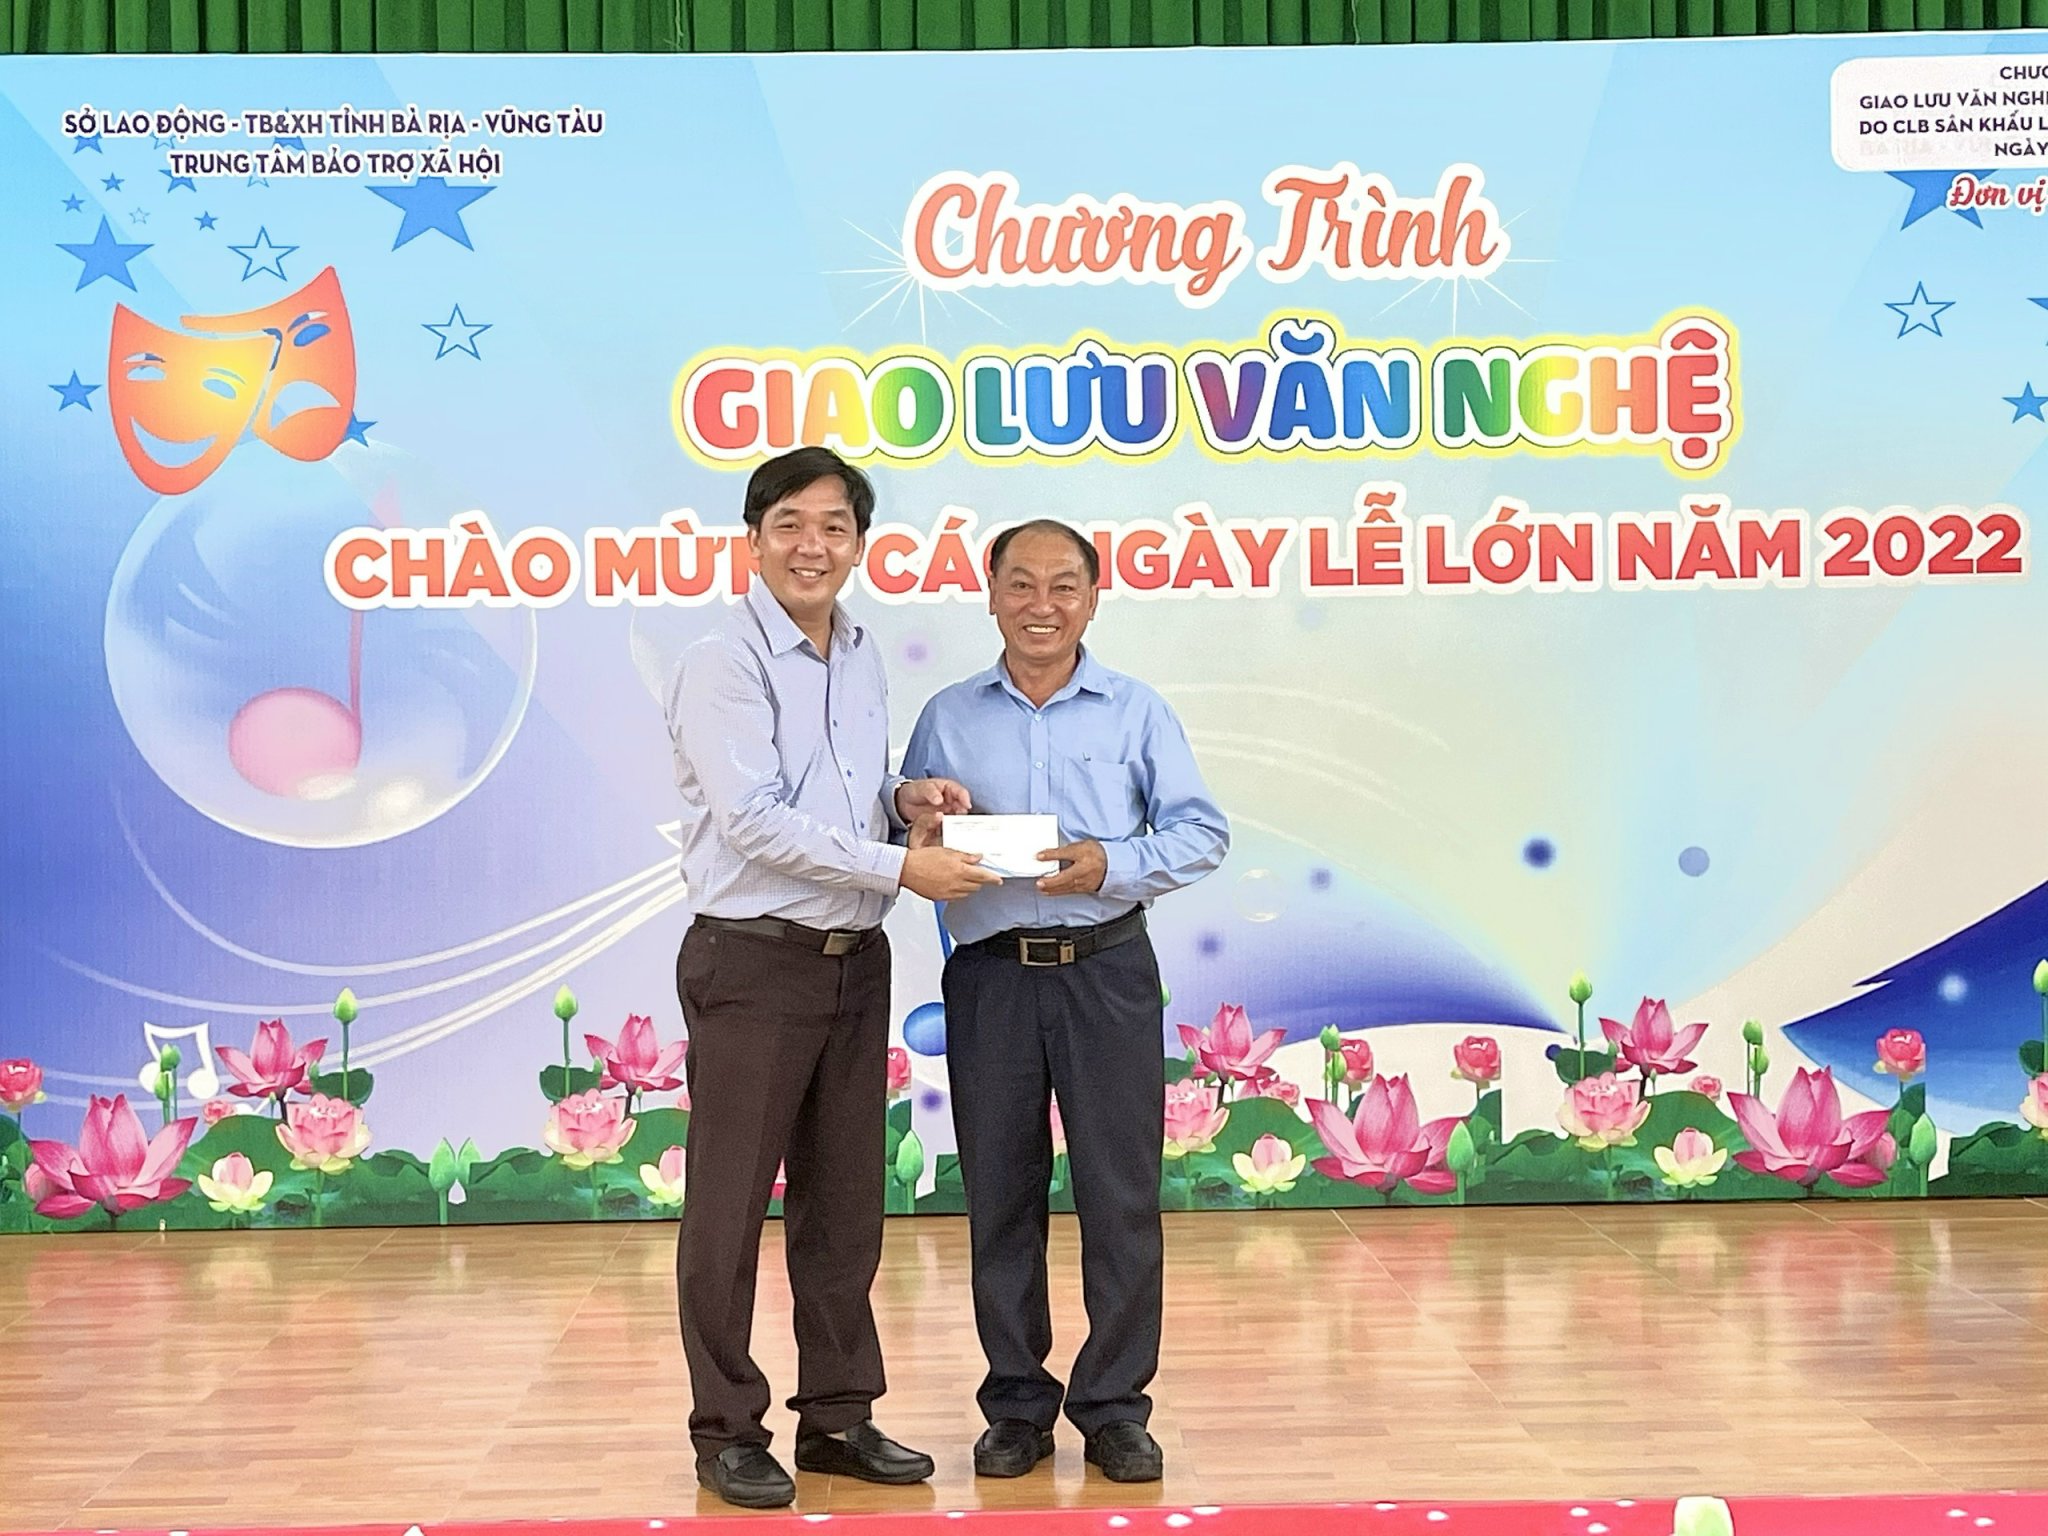 Ông Nguyễn Đức Hoàng, Giám đốc Công ty TNHH Mỹ Nam trao quà đến đại diện Trung tâm Bảo trợ Xã hội.